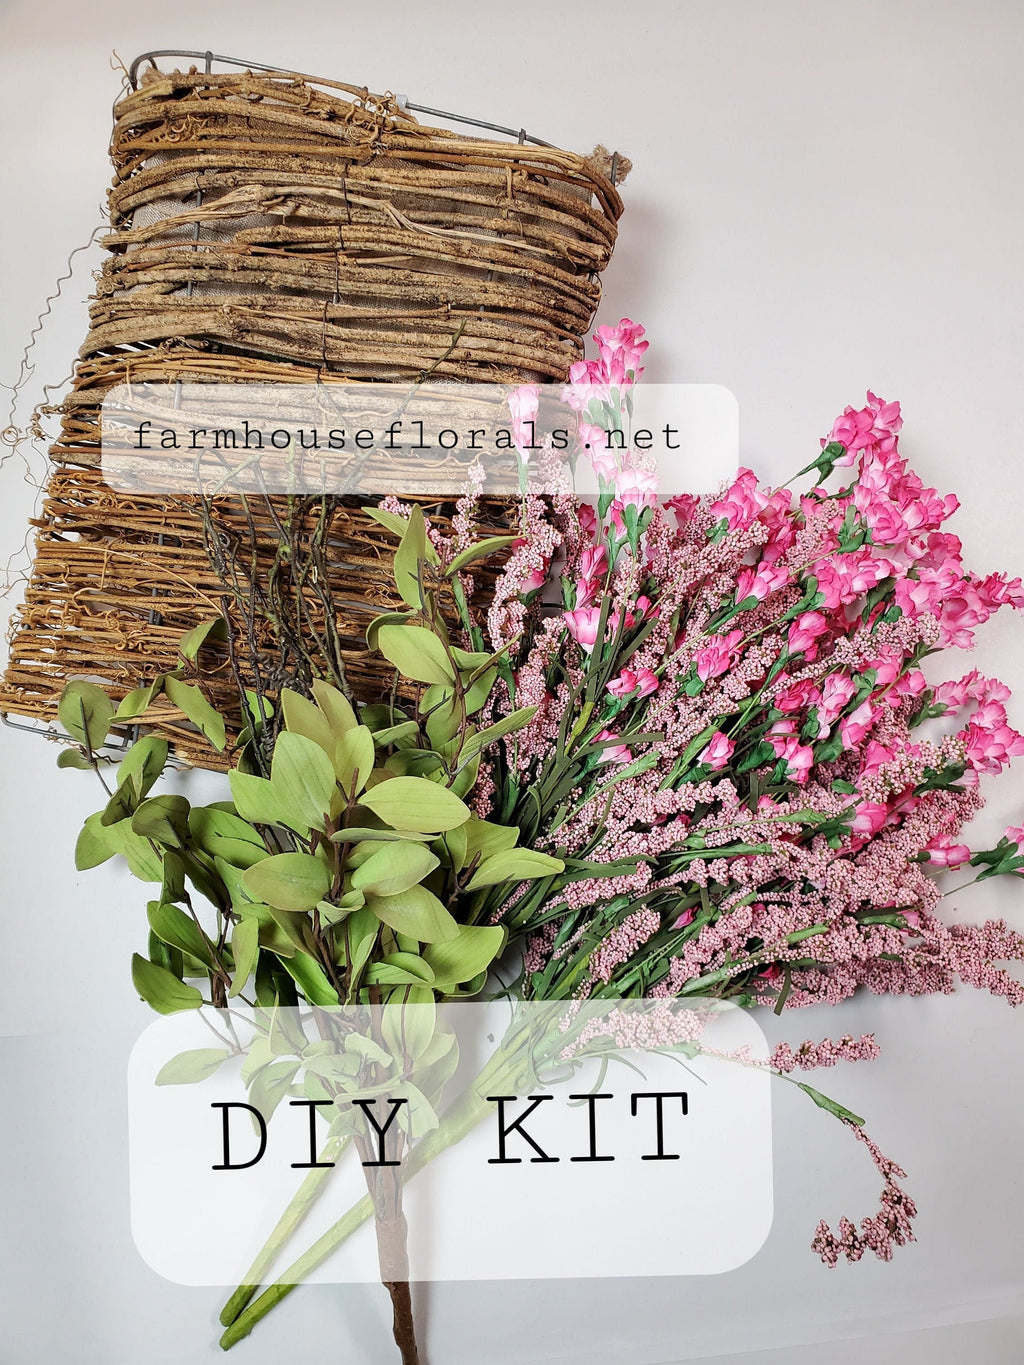 DIY Basket Kit / Pink Berry & Wildflower Door Hanger Basket